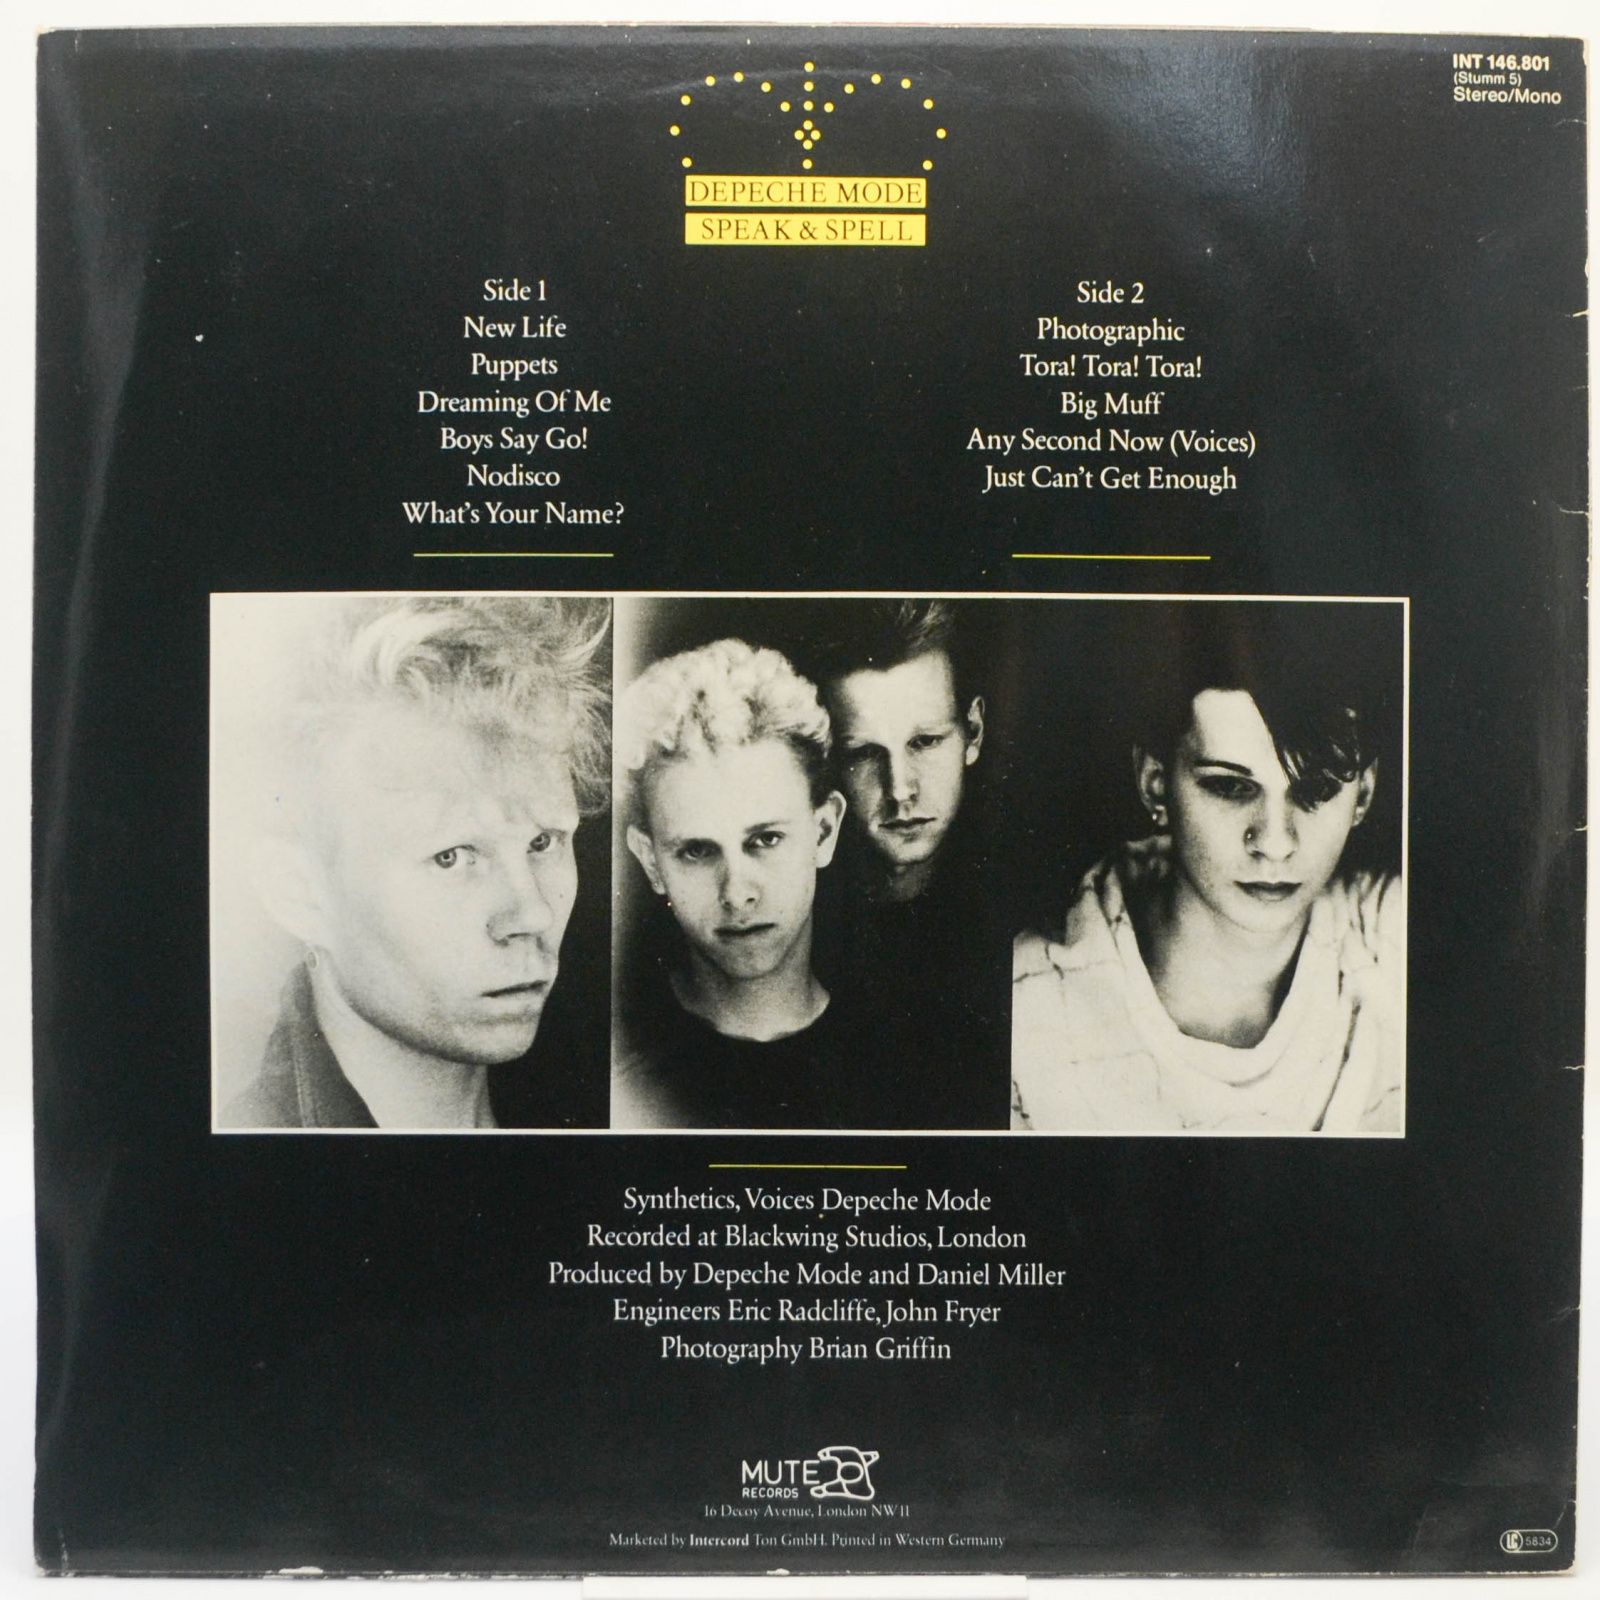 Depeche Mode — Speak & Spell, 1981